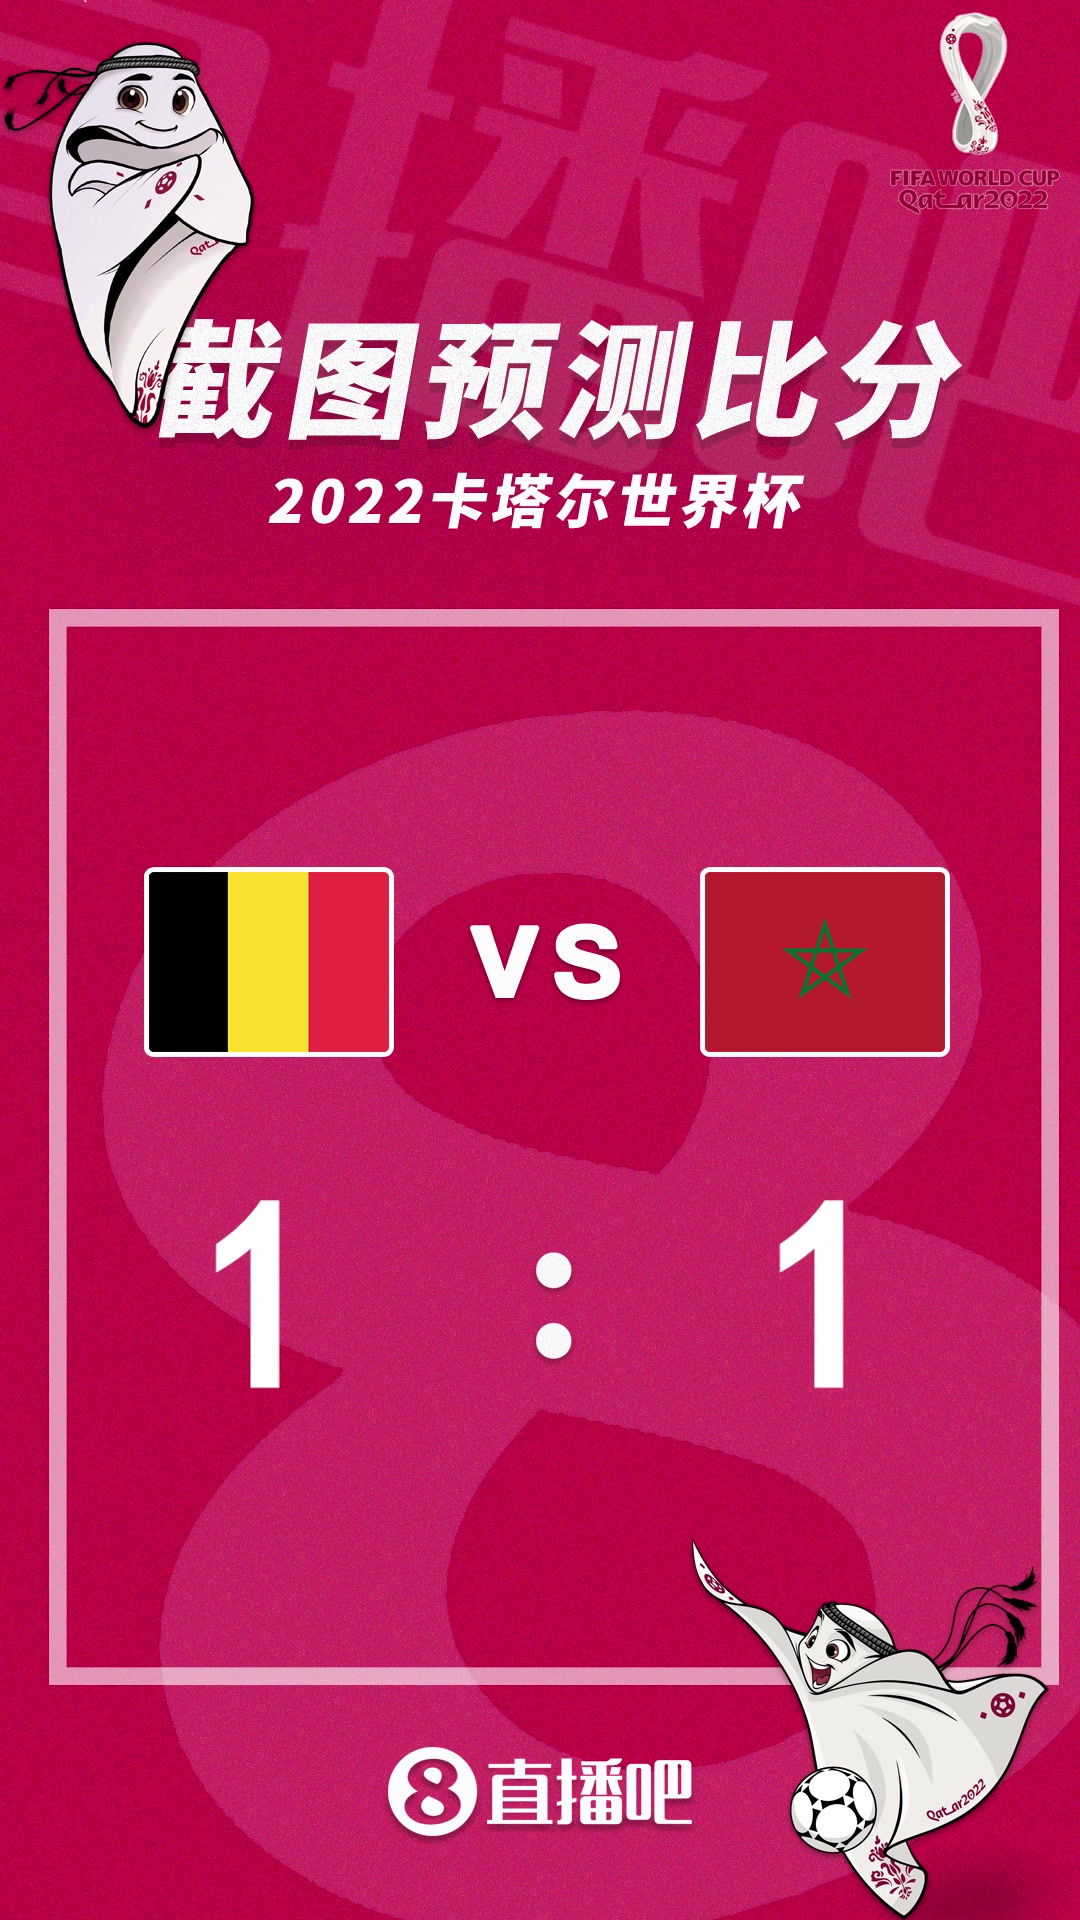 比利时能否提前出线？比利时vs摩洛哥比分预测